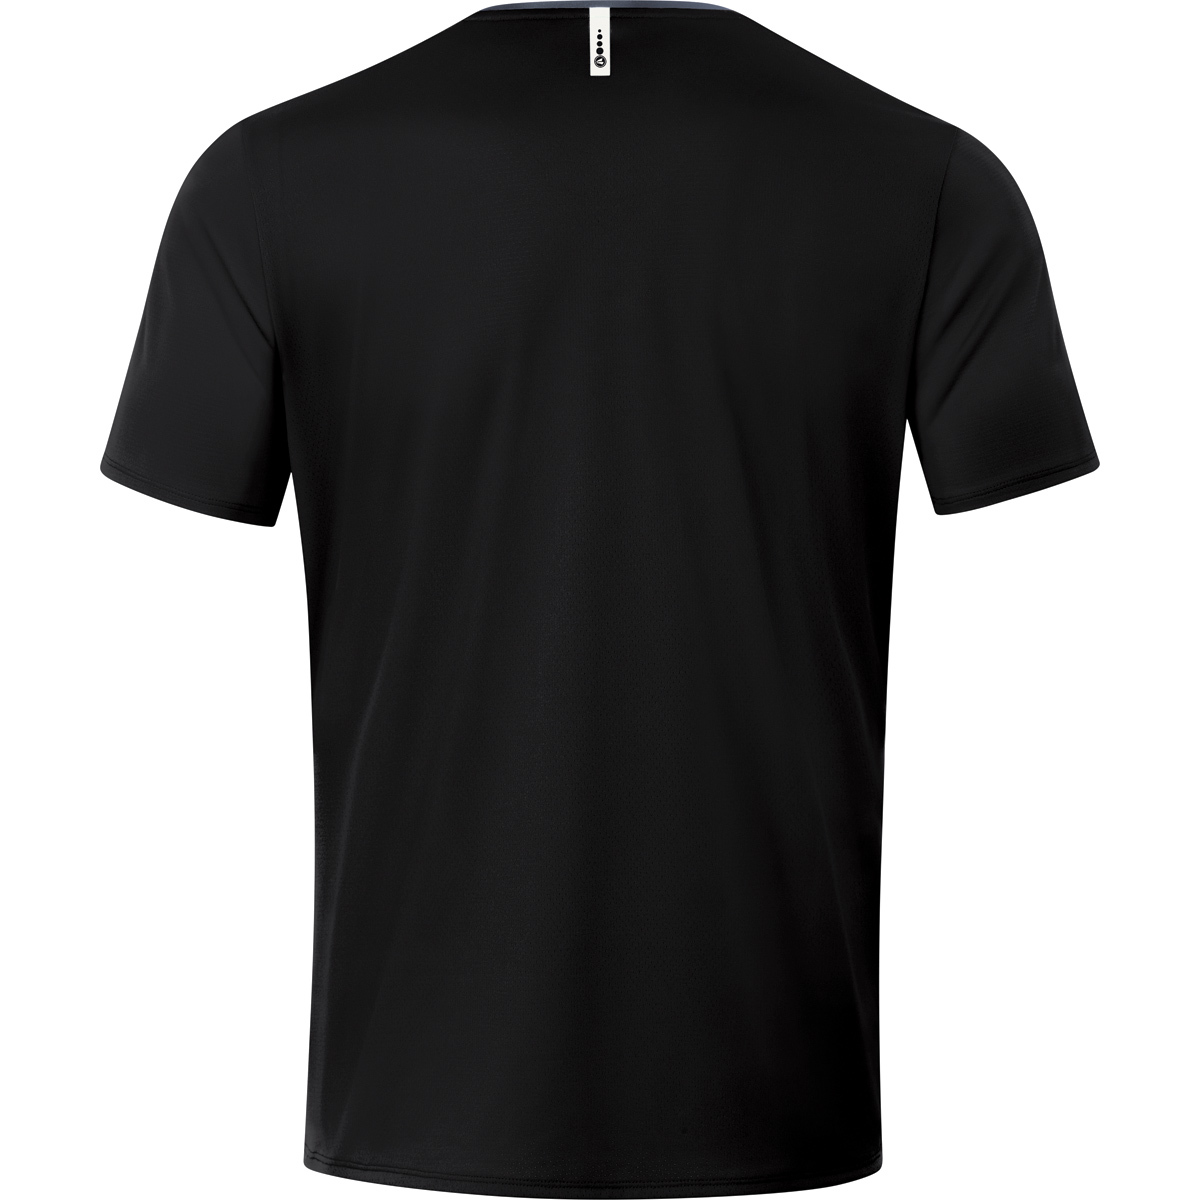 JAKO T-Shirt Champ Herren, schwarz/anthrazit, 2.0 XL, Gr. 6120